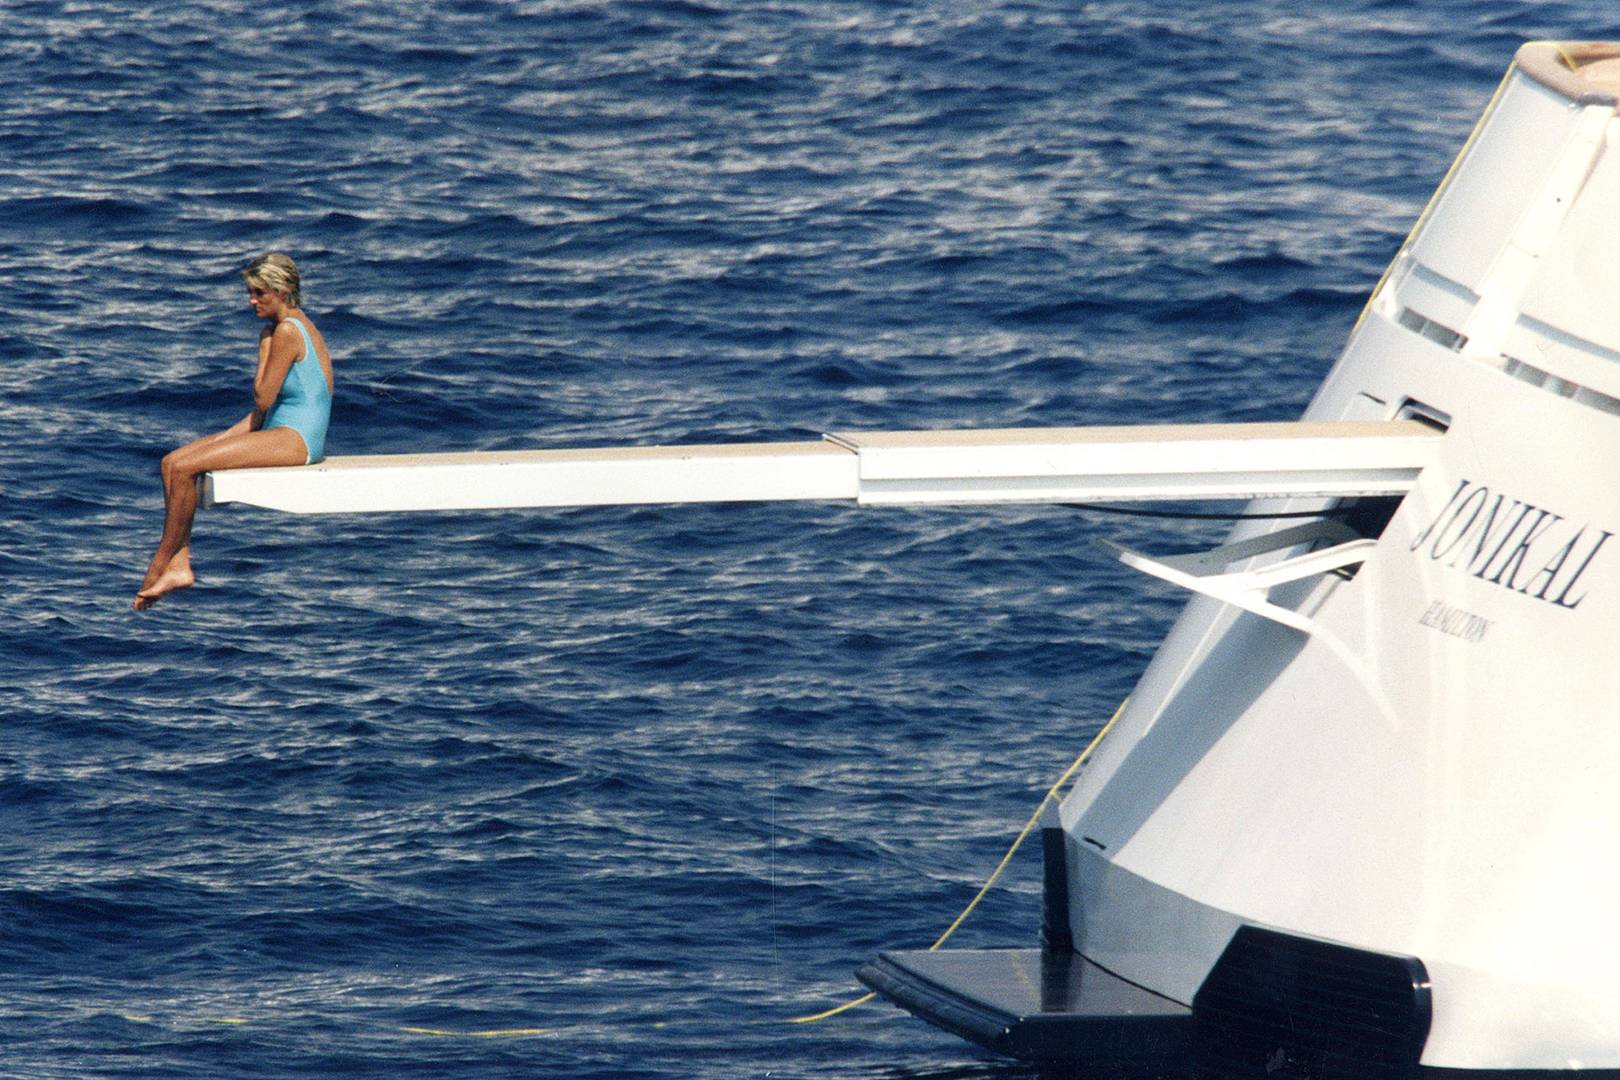 princess diana yacht 1997